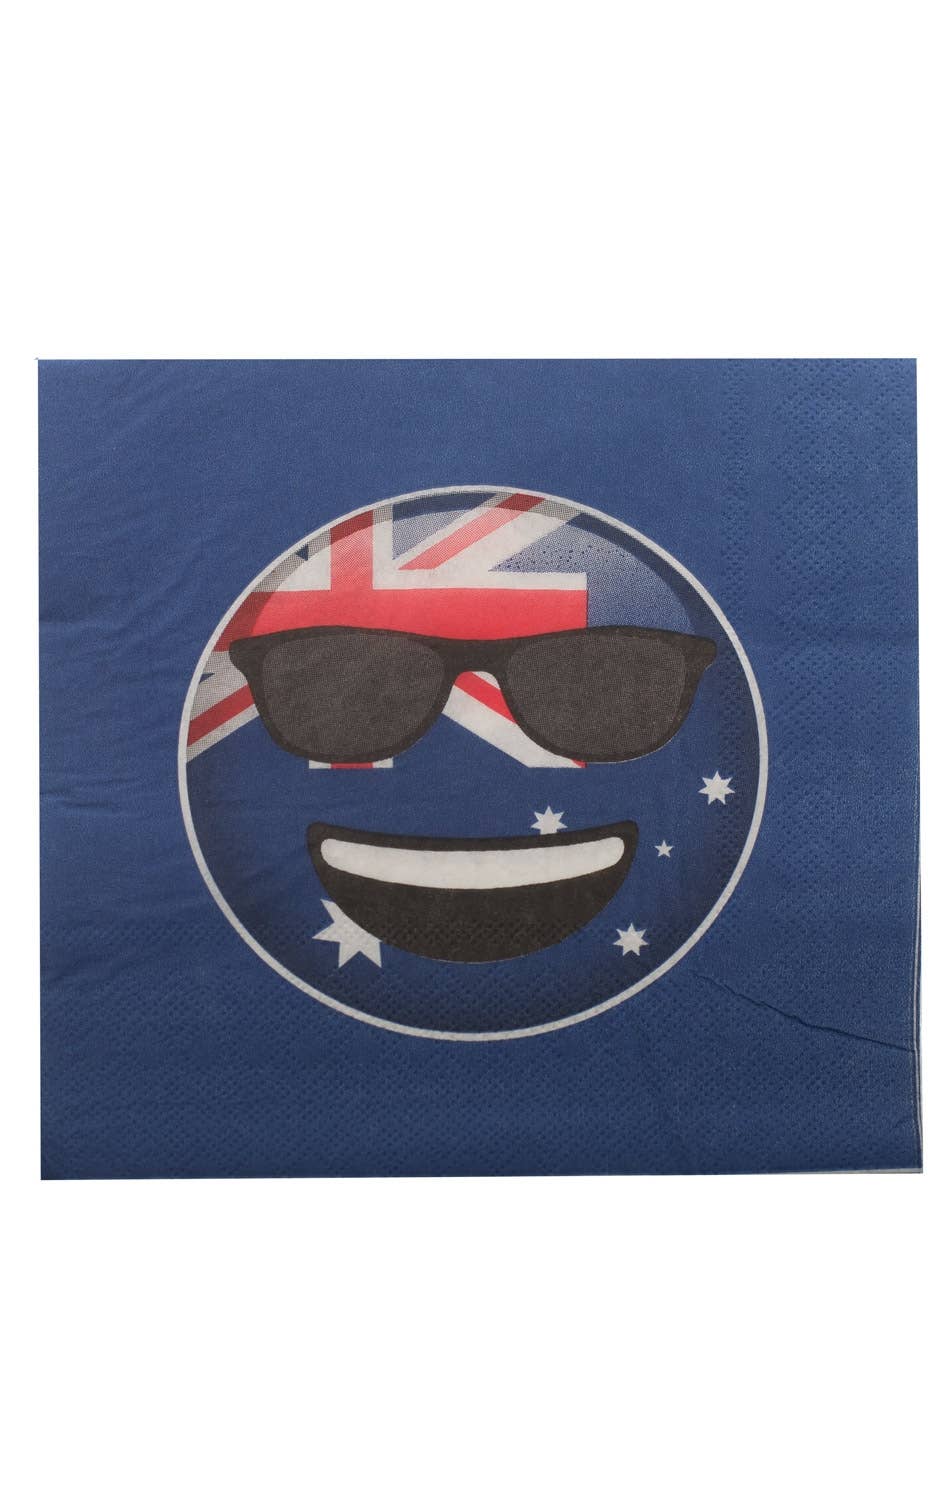 Australia Day Sunglasses Novelty Napkins